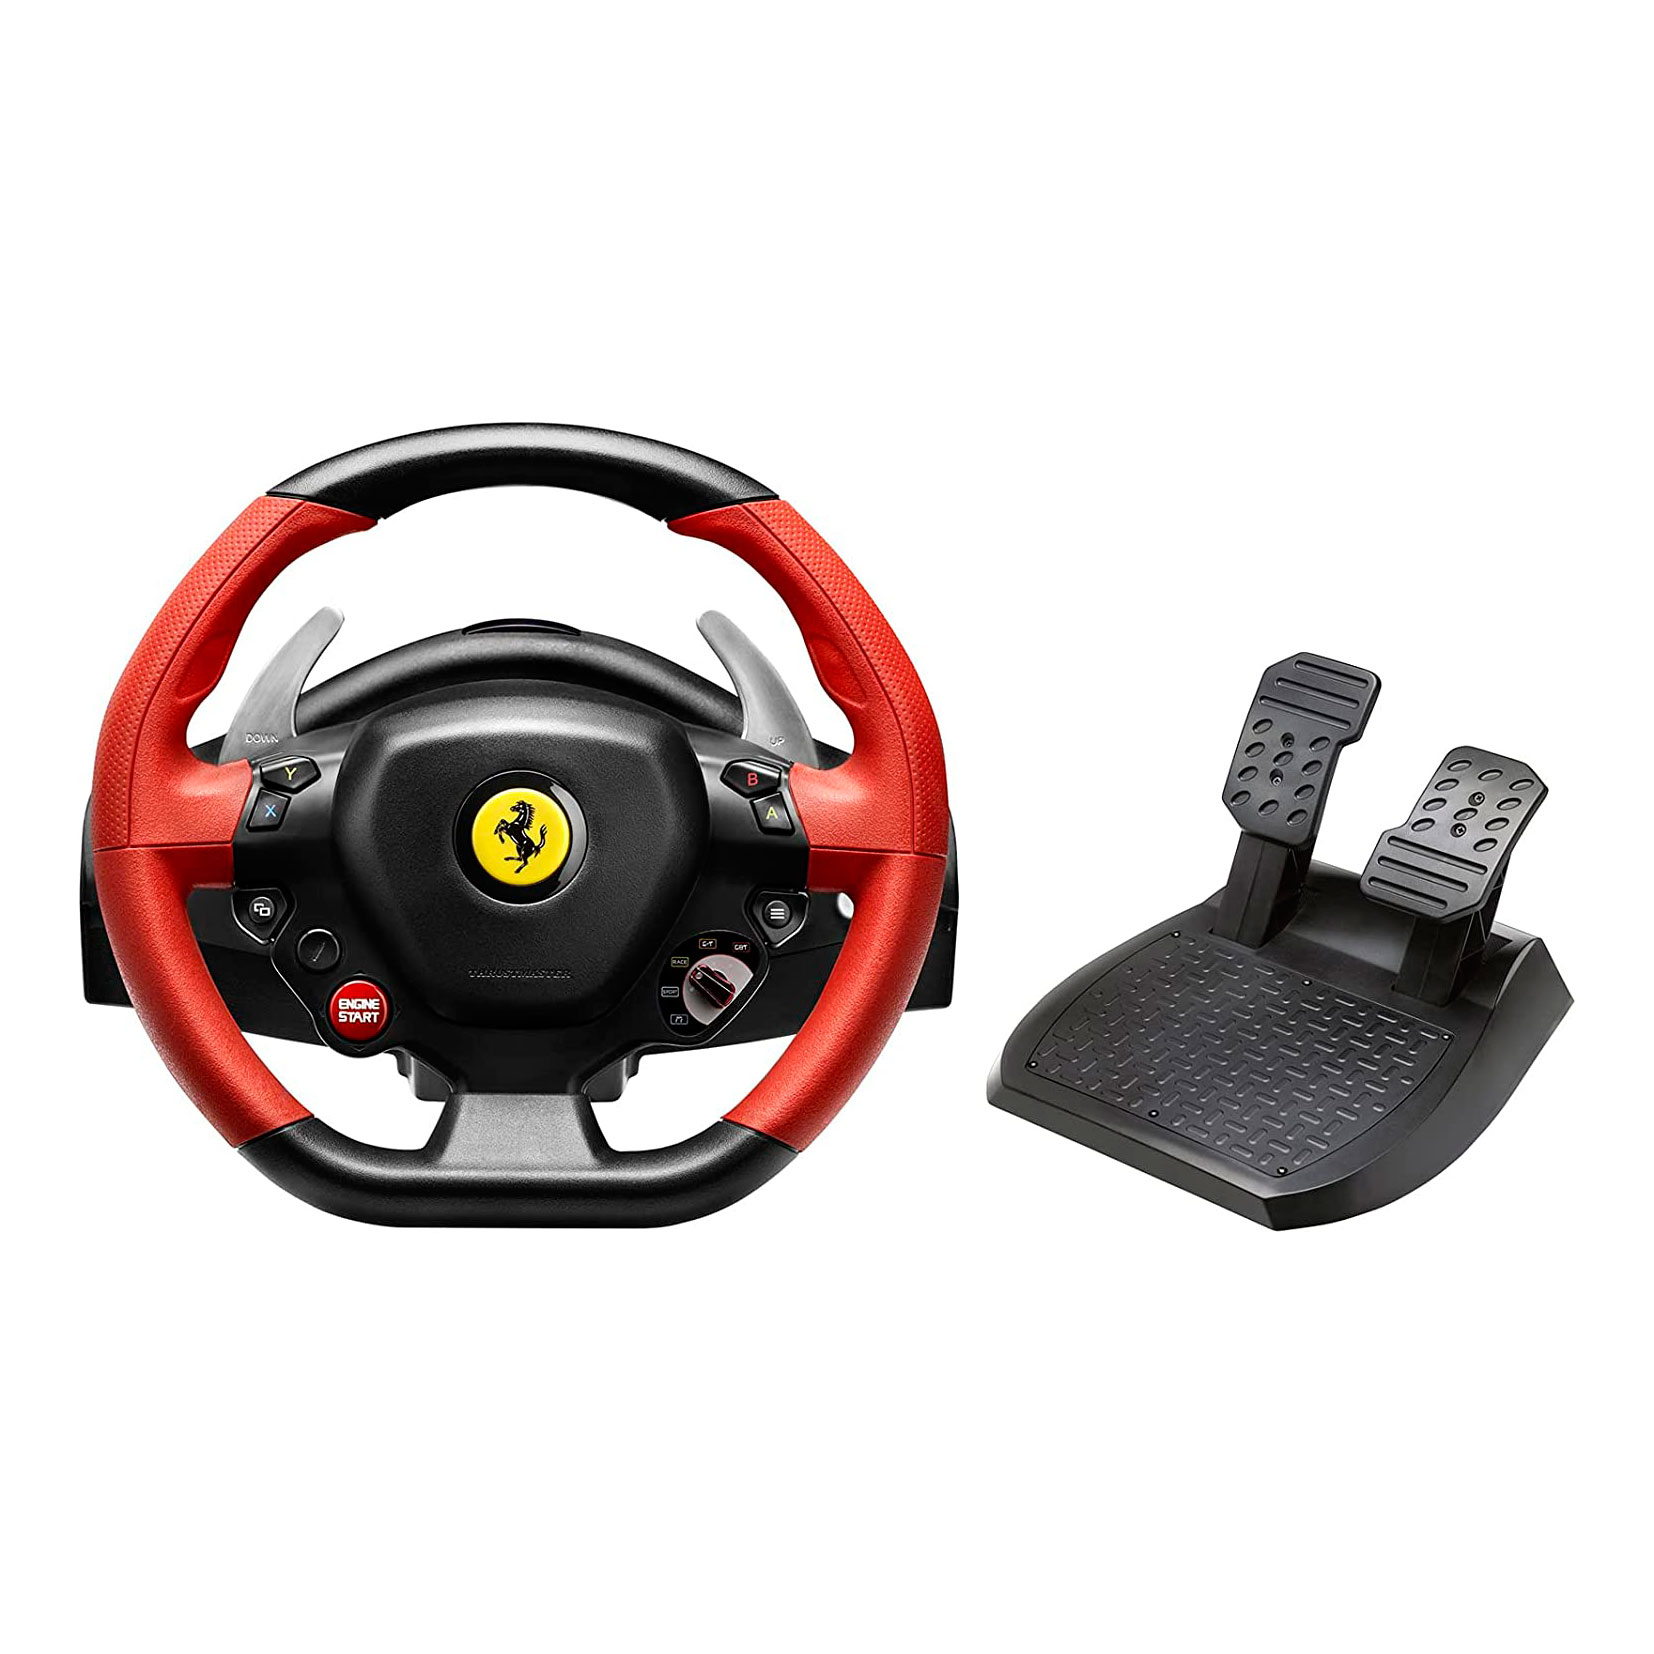 Руль Thrustmaster Ferrari 458 Spider Racing Wheel, черный/красный руль thrustmaster ferrari 458 spider racing wheel для xbox one